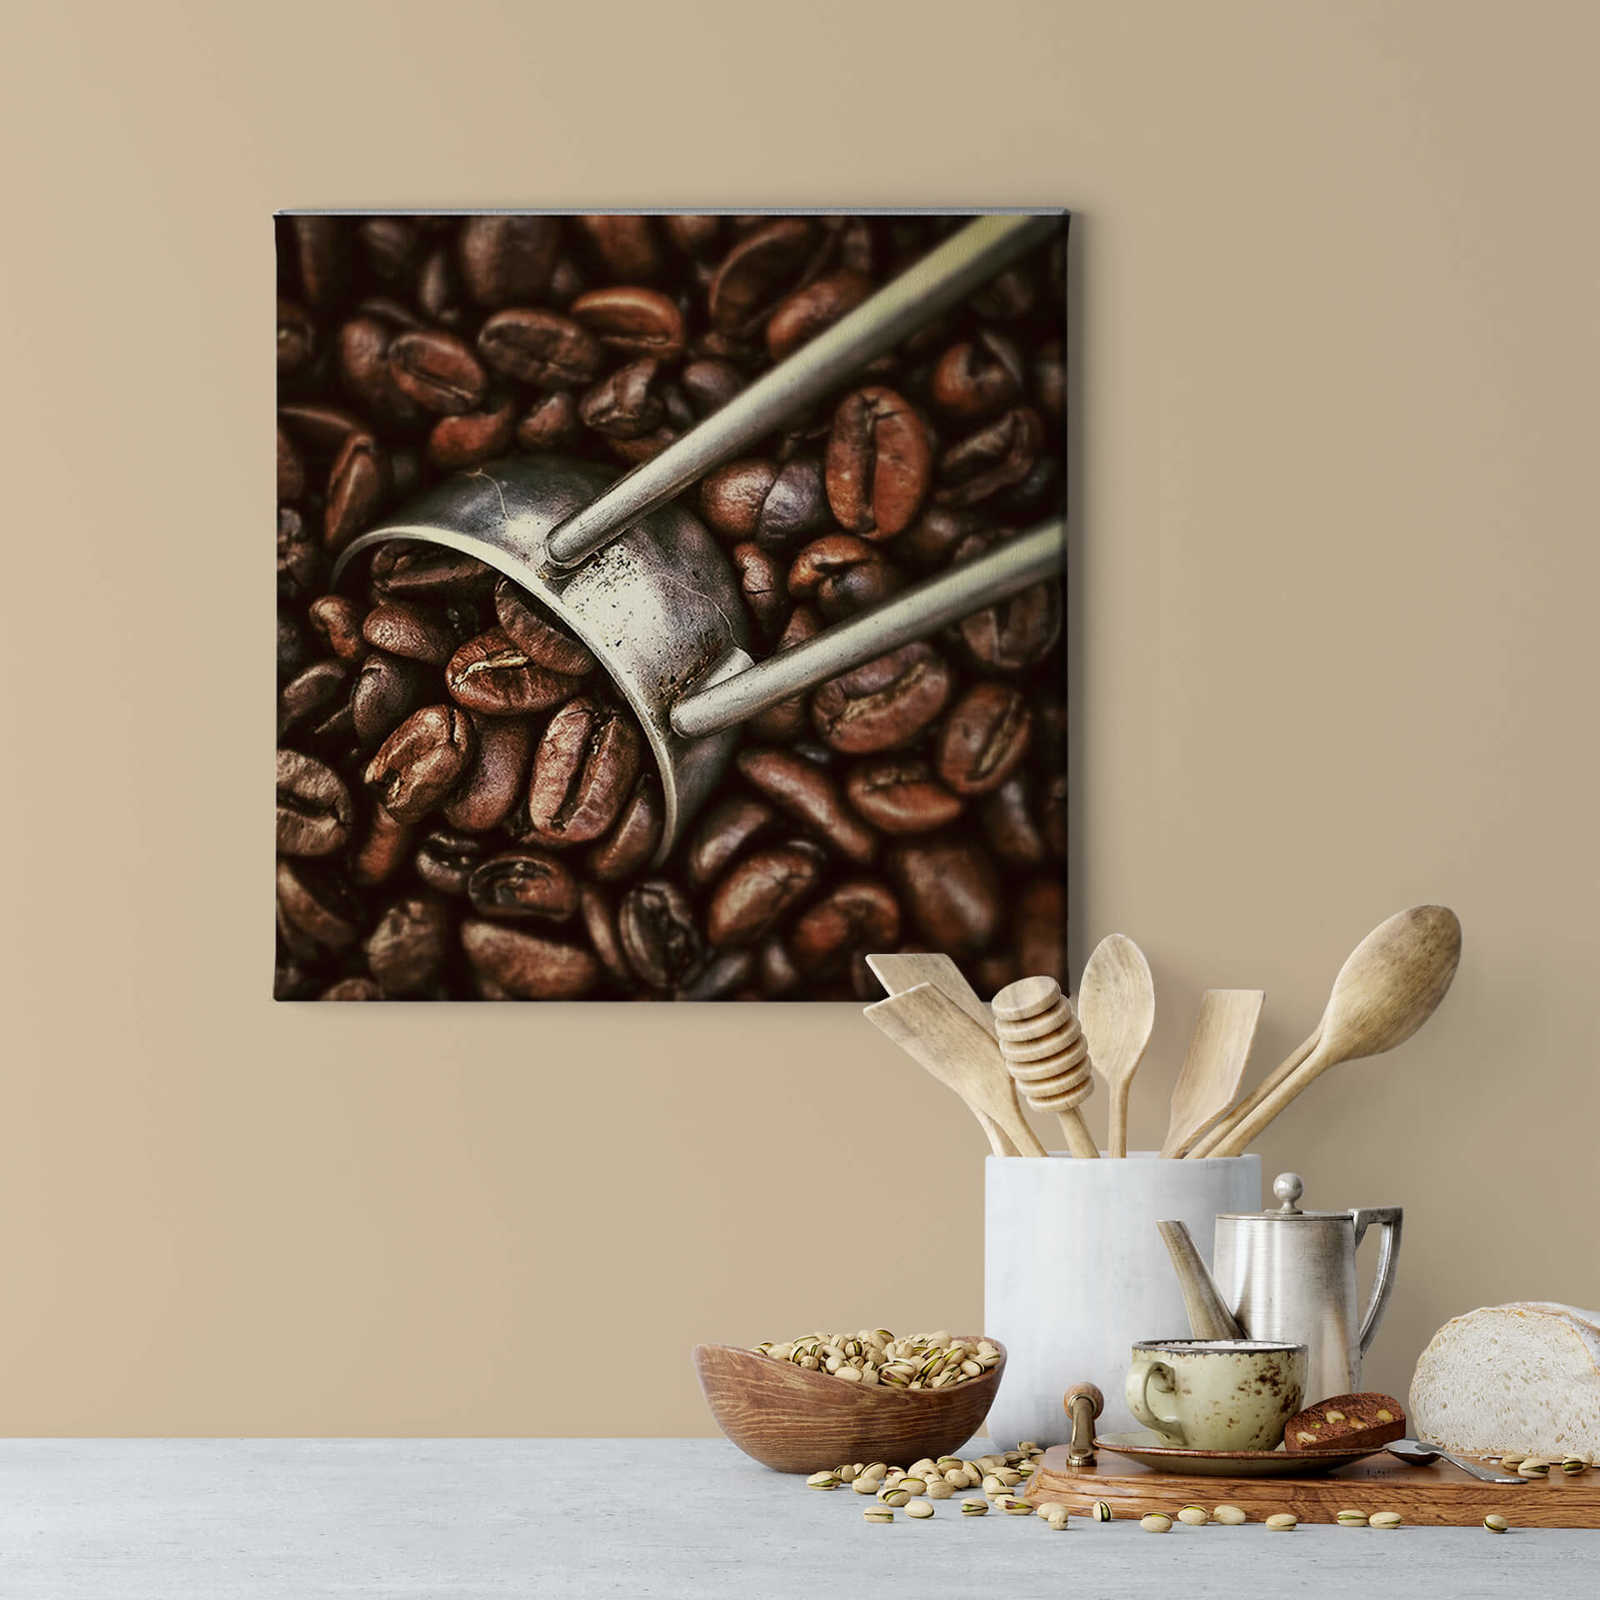             Immagine quadrata Chicchi di caffè - 0,50 m x 0,50 m
        